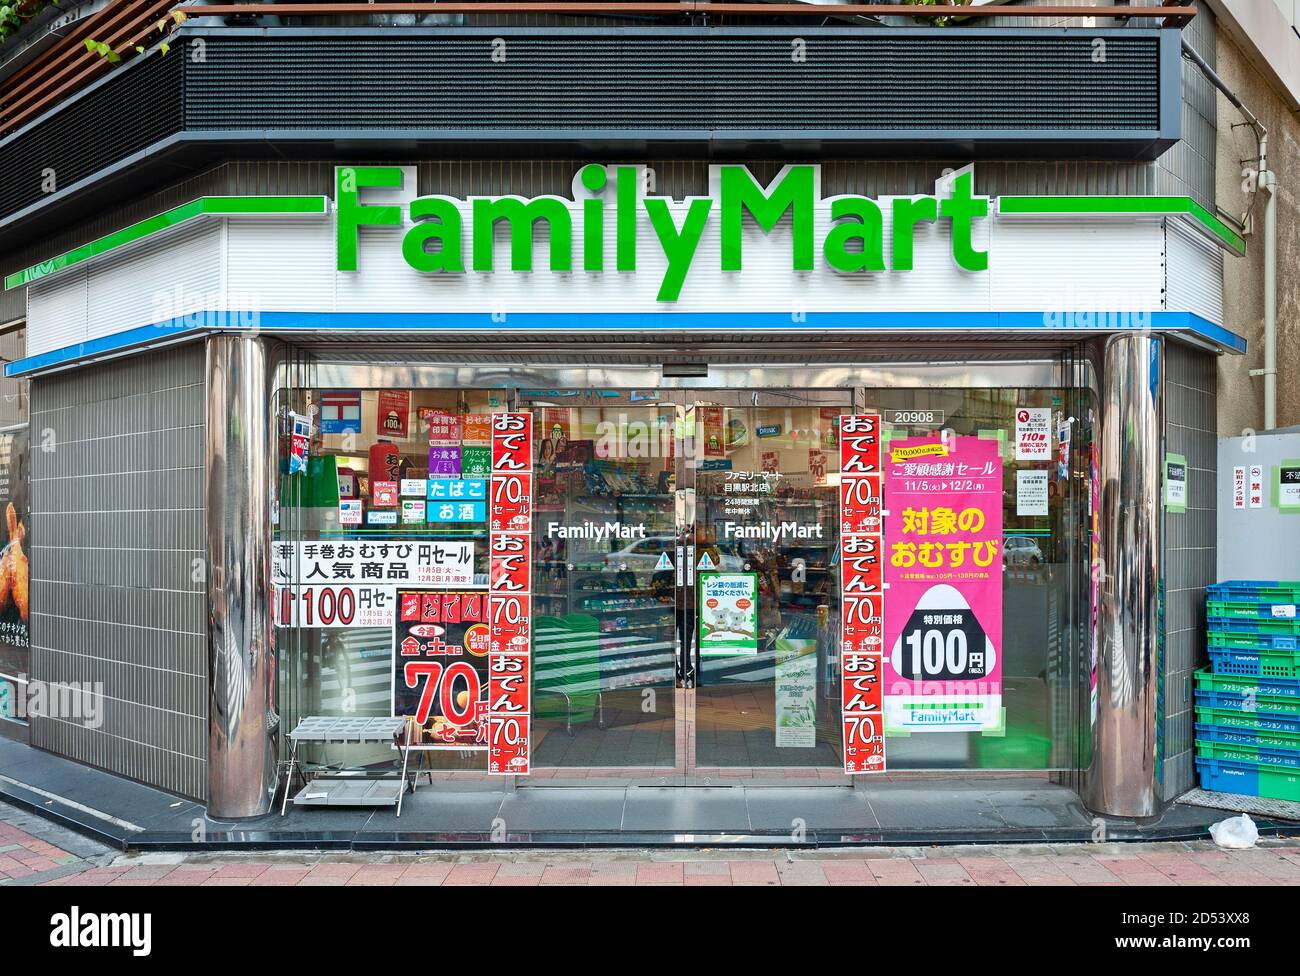 FamilyMart Conbeni, magasin de proximité, Japon Banque D'Images